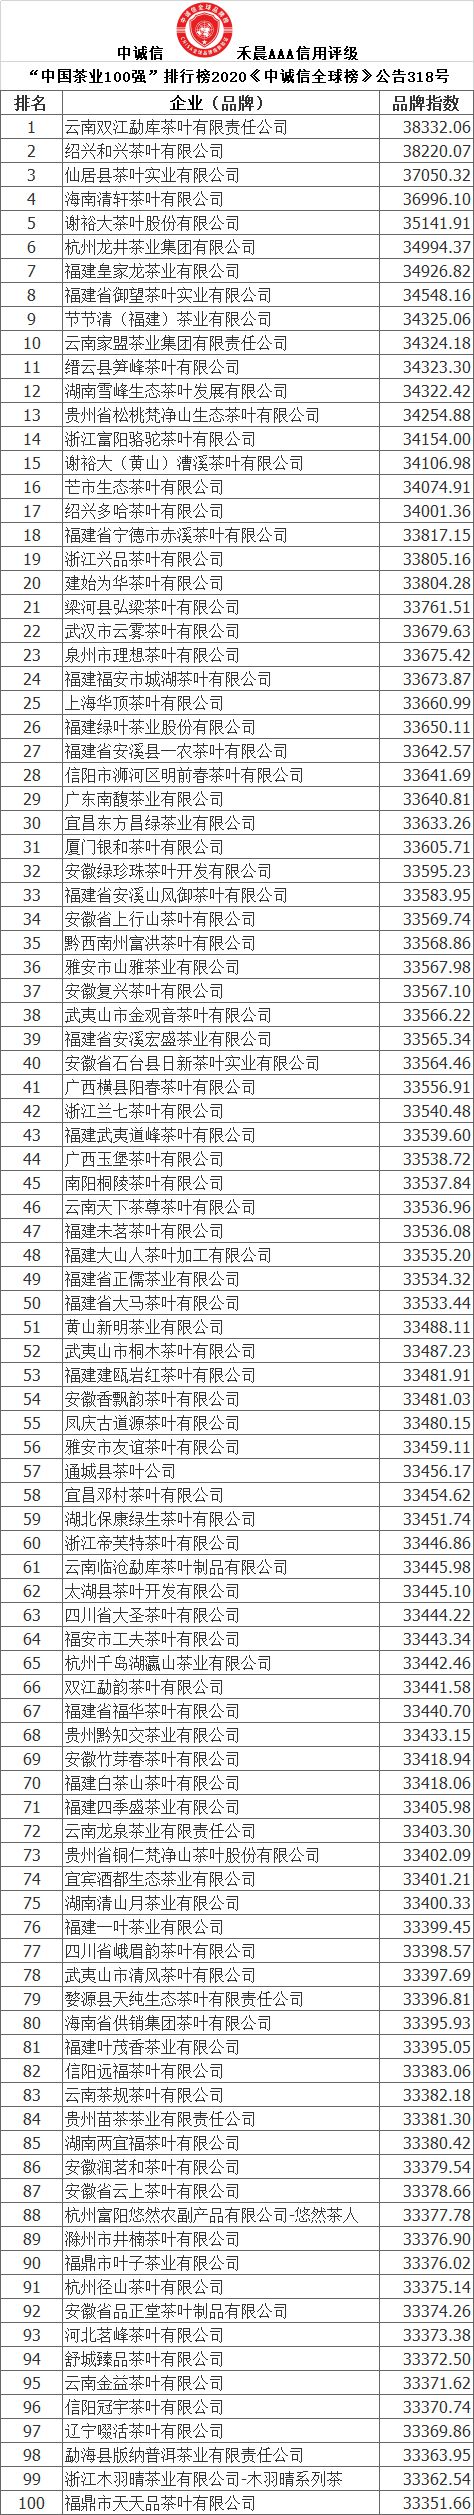 中诚信全球榜-发布“中国茶业100强”排行榜20必博体育20龙井茶业上榜(图2)